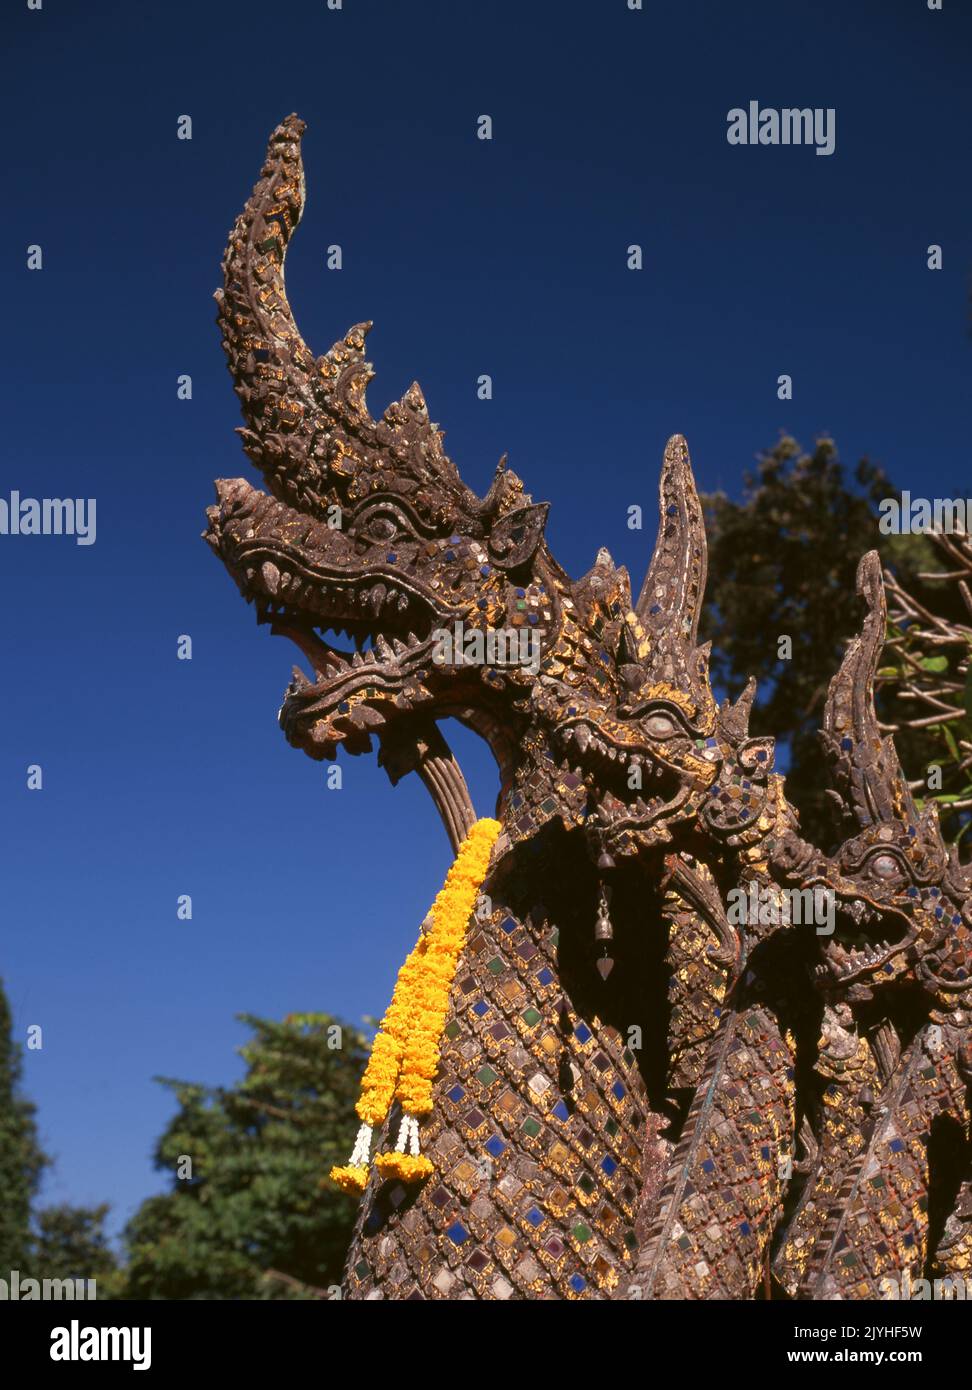 Tailandia: Balaustrada Naga (serpiente mítica), Wat Phrathat Doi Suthep, un templo budista Theravada situado en Doi Suthep (montaña Suthep), con vistas a la ciudad de Chiang Mai. El magnífico chedi dorado, que data del siglo 16th, ofrece magníficas vistas a través del valle de Chiang Mai hasta el río Ping. El rey Mengrai fundó la ciudad de Chiang Mai (que significa 'nueva ciudad') en 1296, y sucedió a Chiang Rai como capital del reino Lanna. Foto de stock